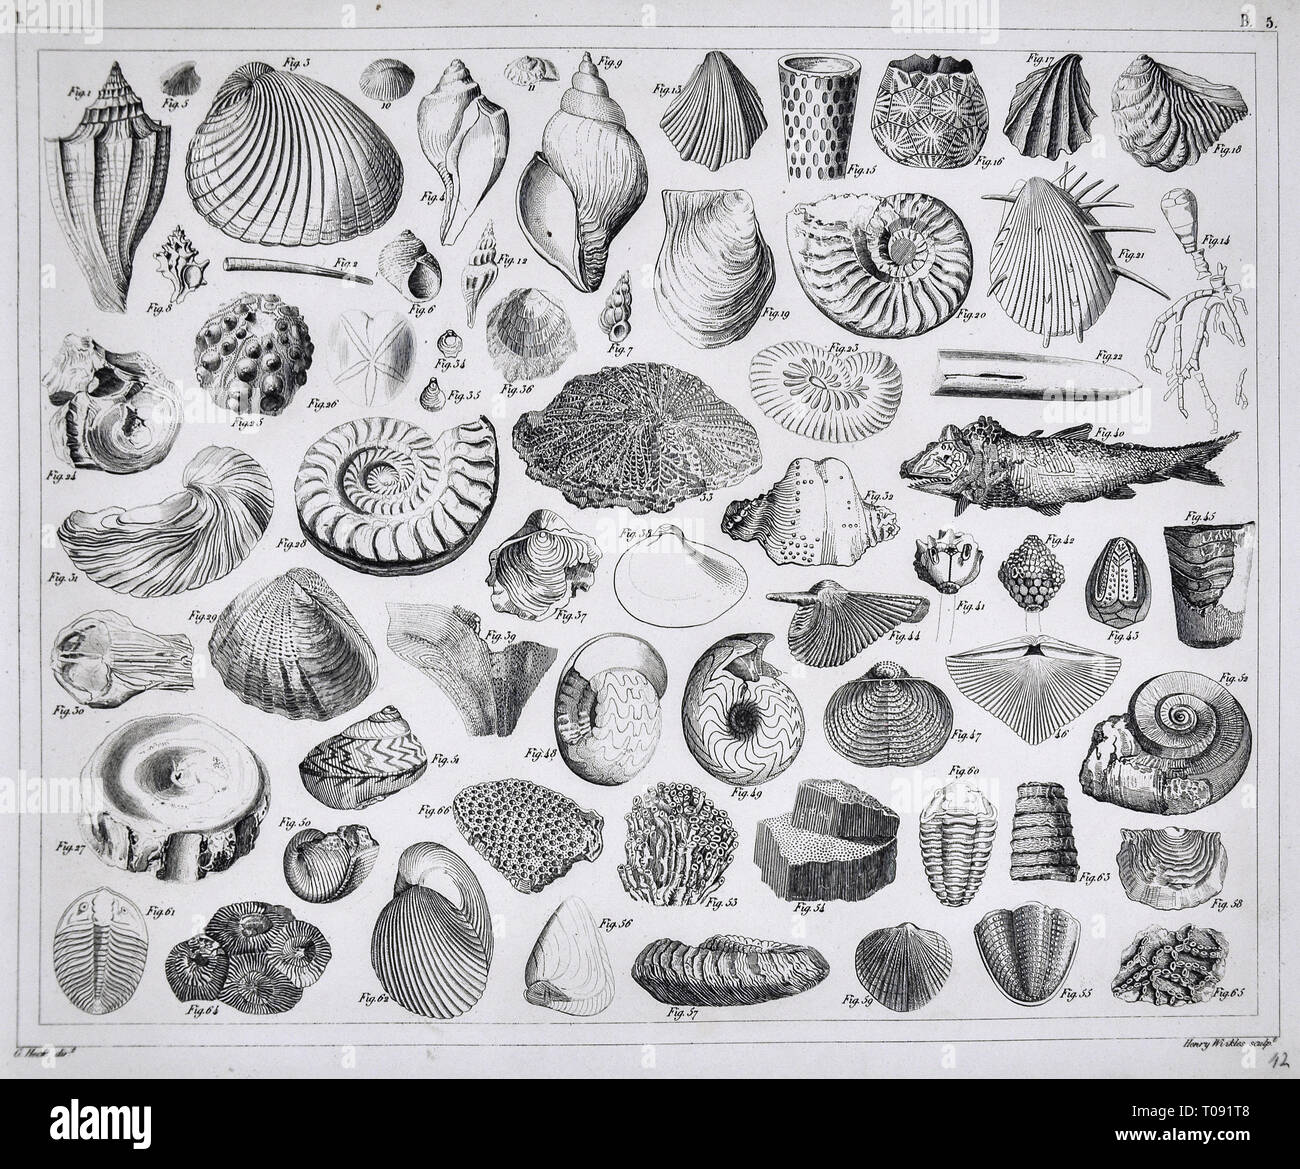 Les photos 1849 Imprimer - Atlas des fossiles préhistoriques de la période Paléozoïque y compris des coquillages brachiopodes, trilobites, Ammonites, des coraux et autres créatures marines Banque D'Images